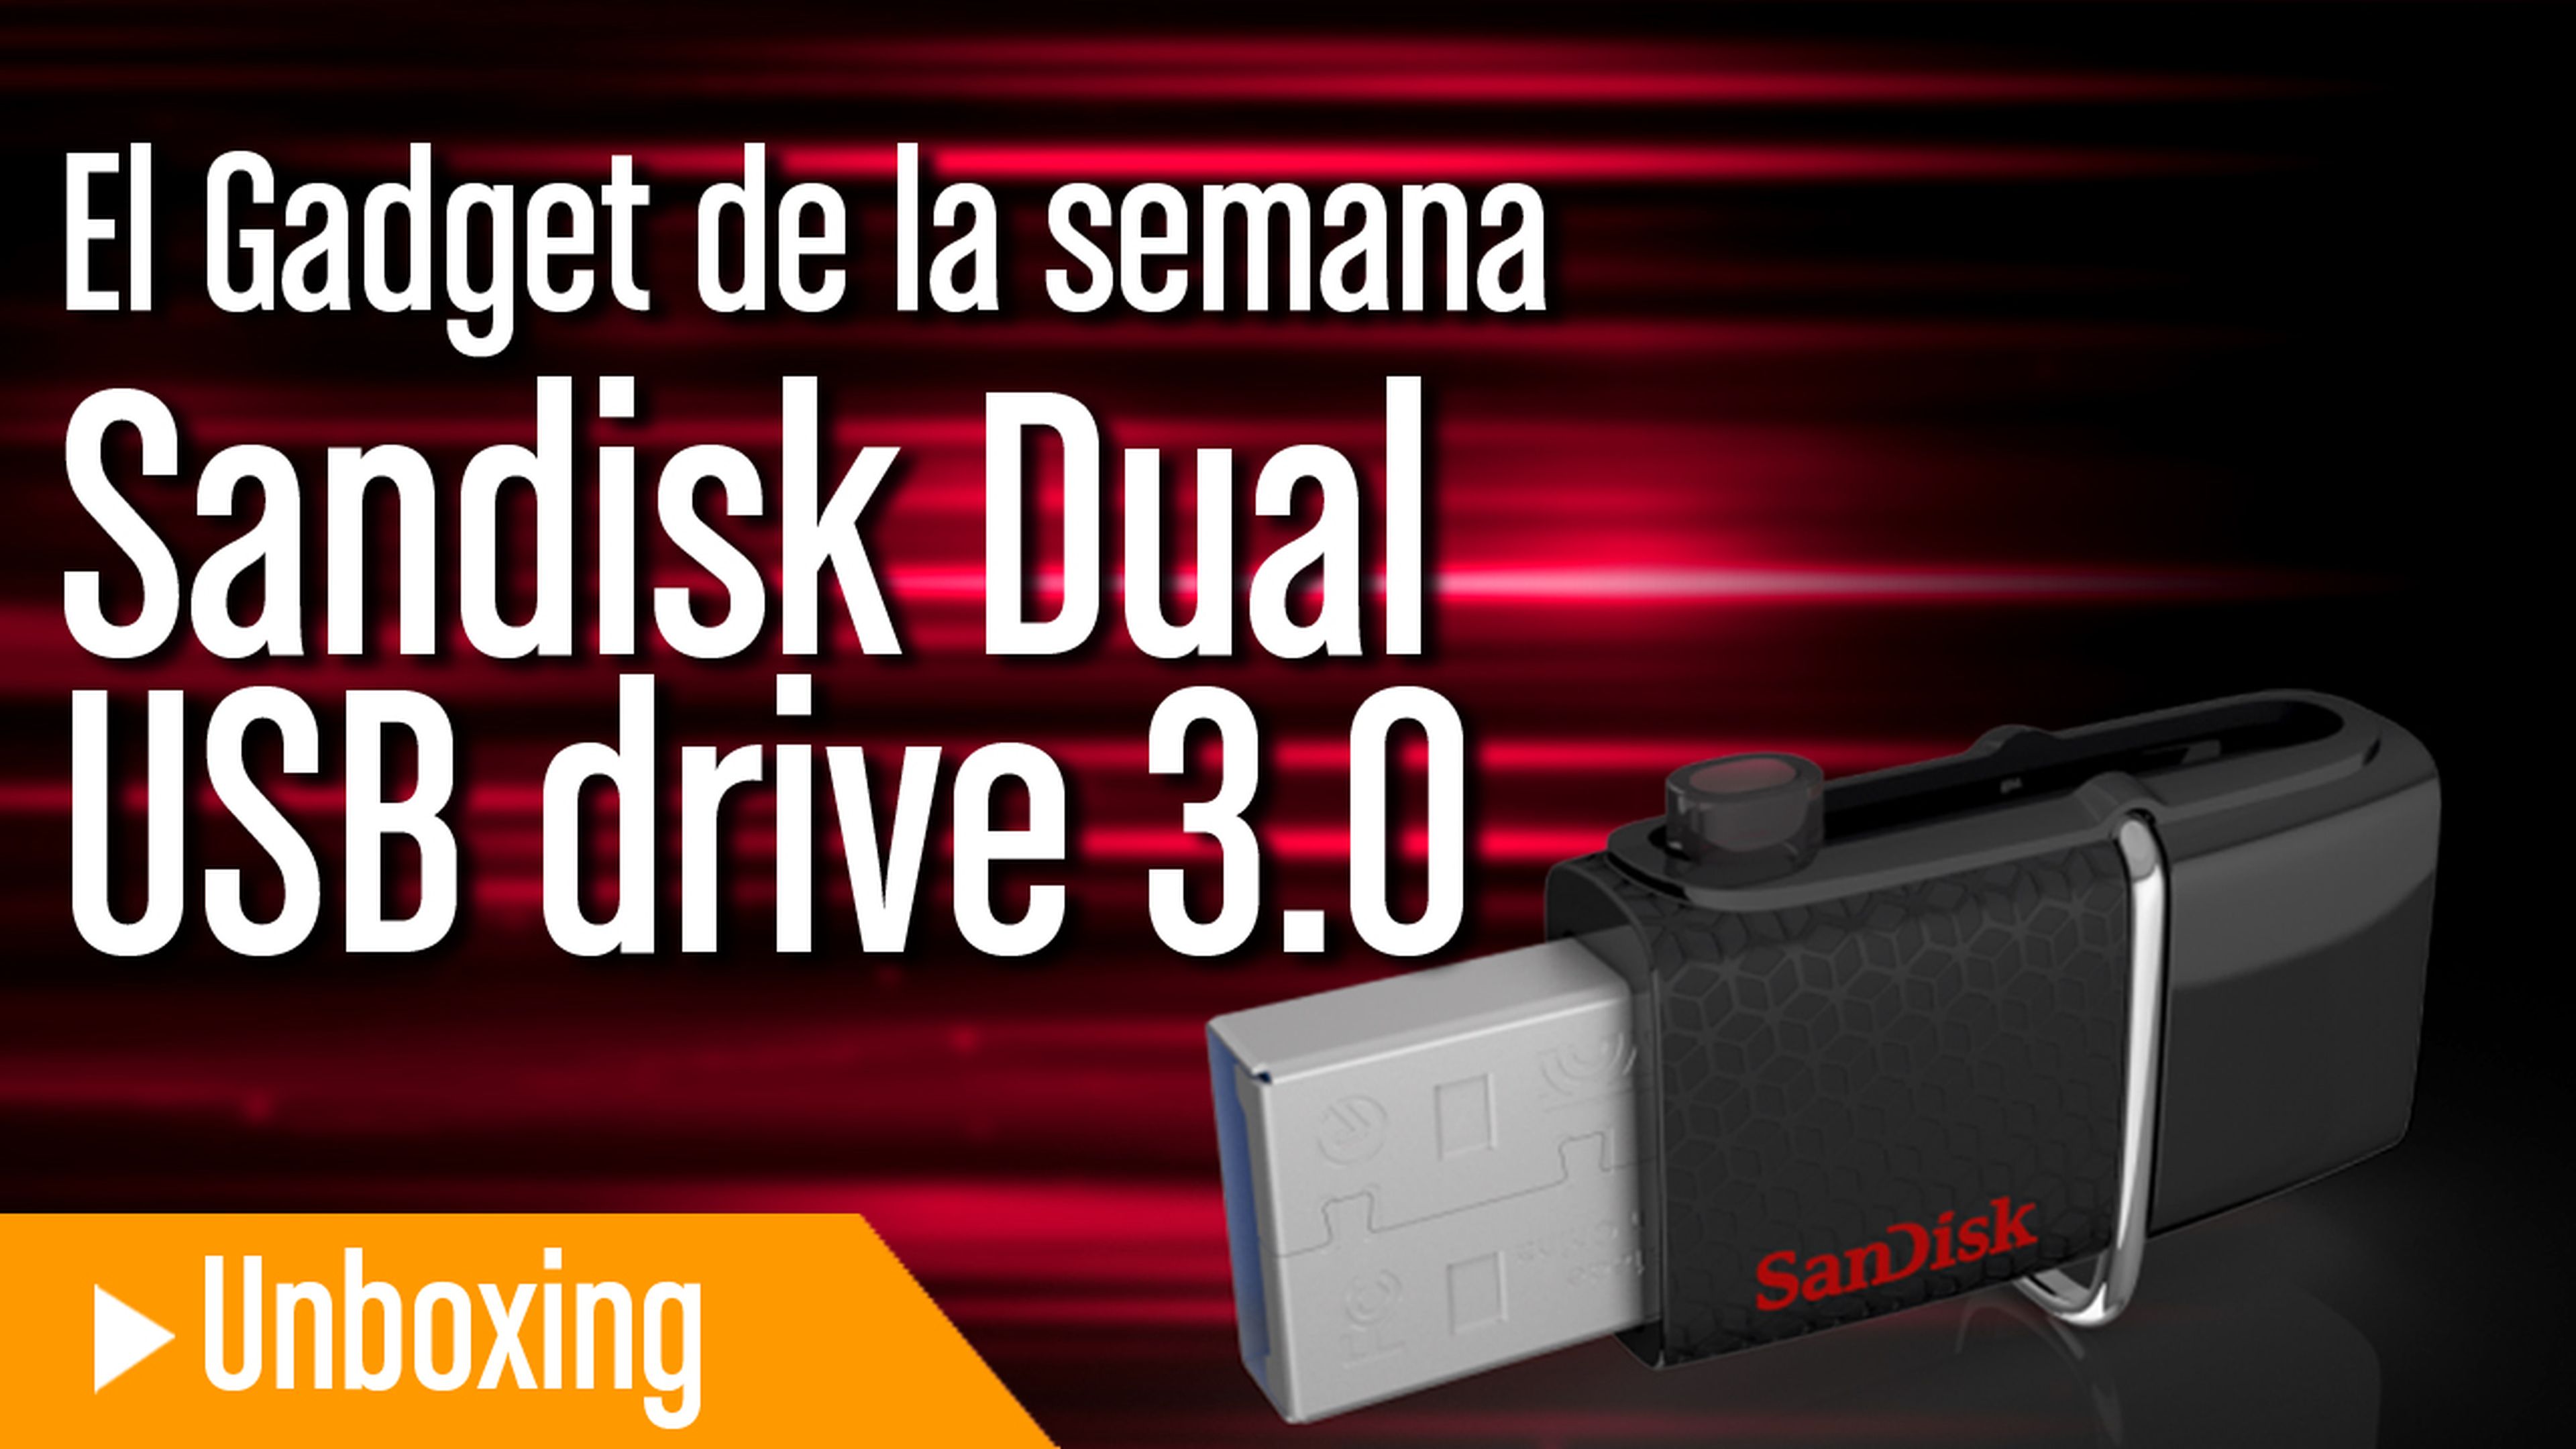 SanDisk Dual USB